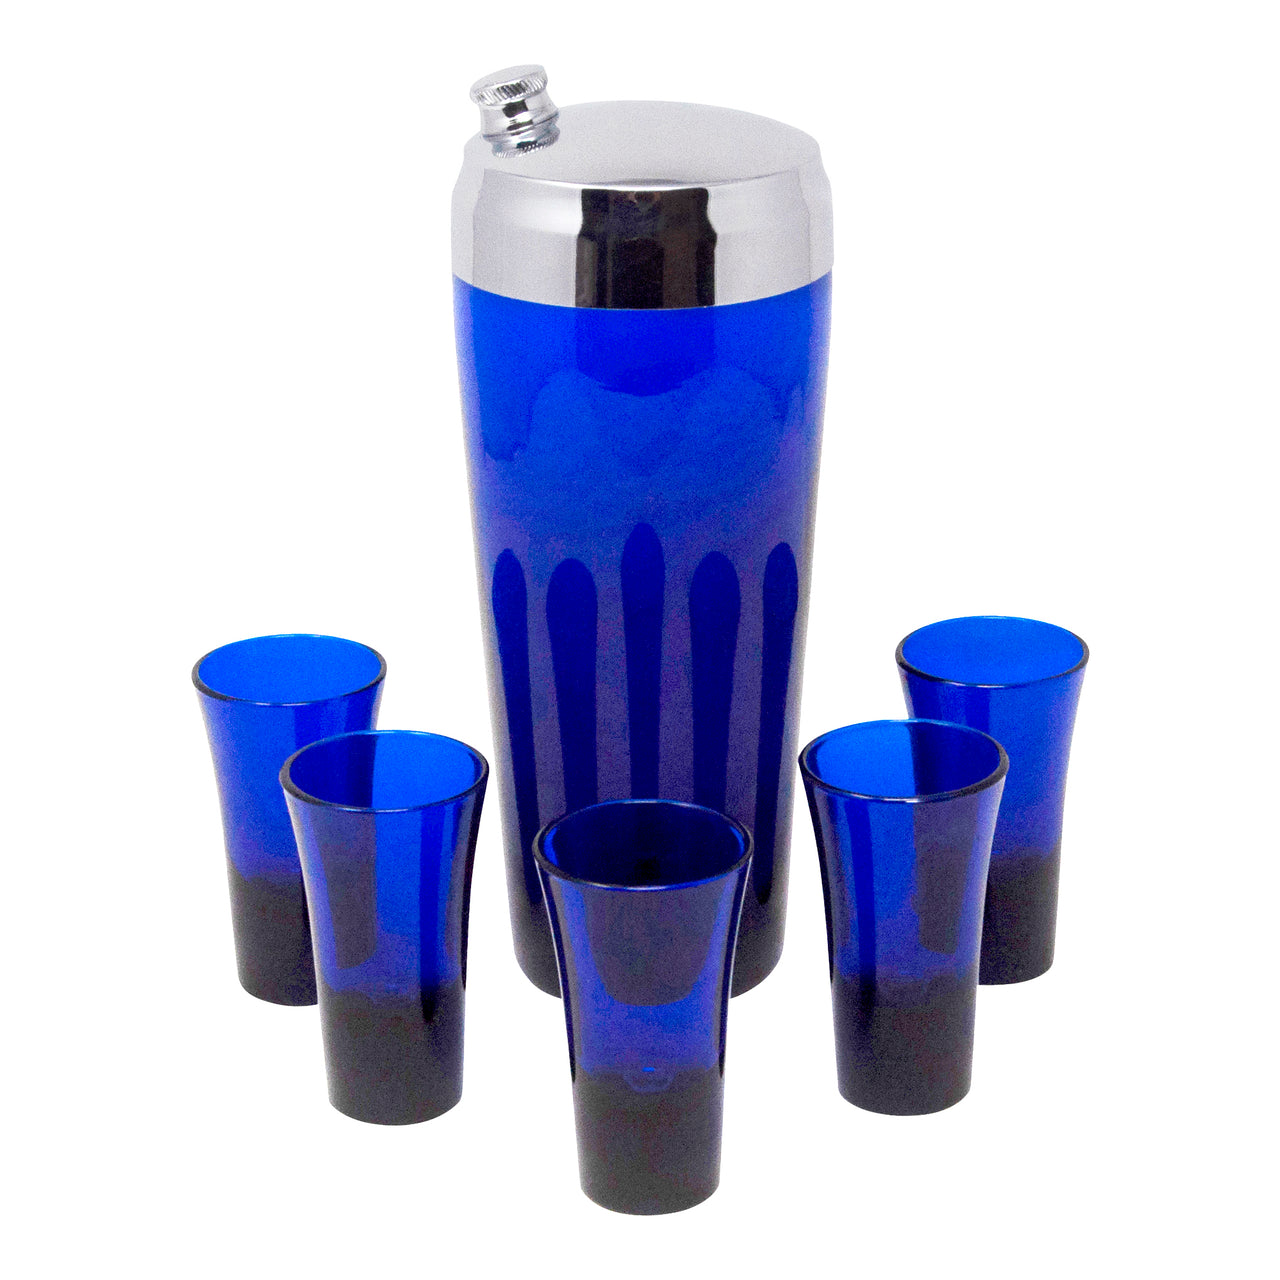 https://thehourshop.com/cdn/shop/products/21019-Vintage-Cobalt-Blue-Shaker-Glasses-Cocktail-Set_fcf2c2fc-22cb-4f56-963d-eef00cca913d_1280x1280.jpg?v=1595006808